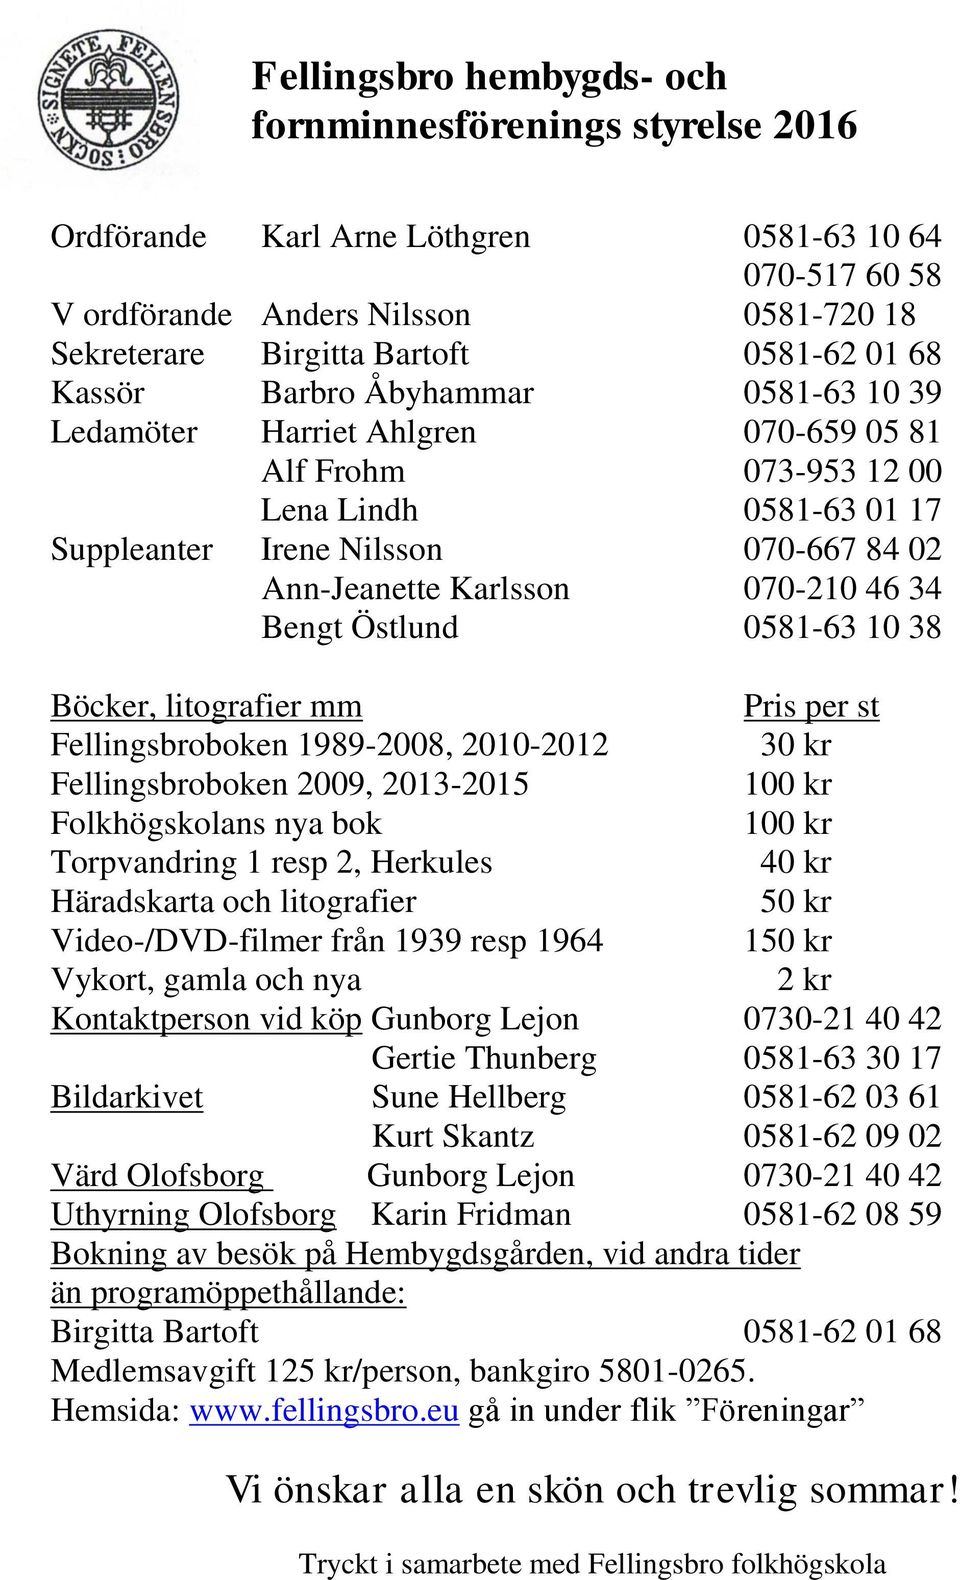 46 34 Bengt Östlund 0581-63 10 38 Böcker, litografier mm Pris per st Fellingsbroboken 1989-2008, 2010-2012 30 kr Fellingsbroboken 2009, 2013-2015 100 kr Folkhögskolans nya bok 100 kr Torpvandring 1